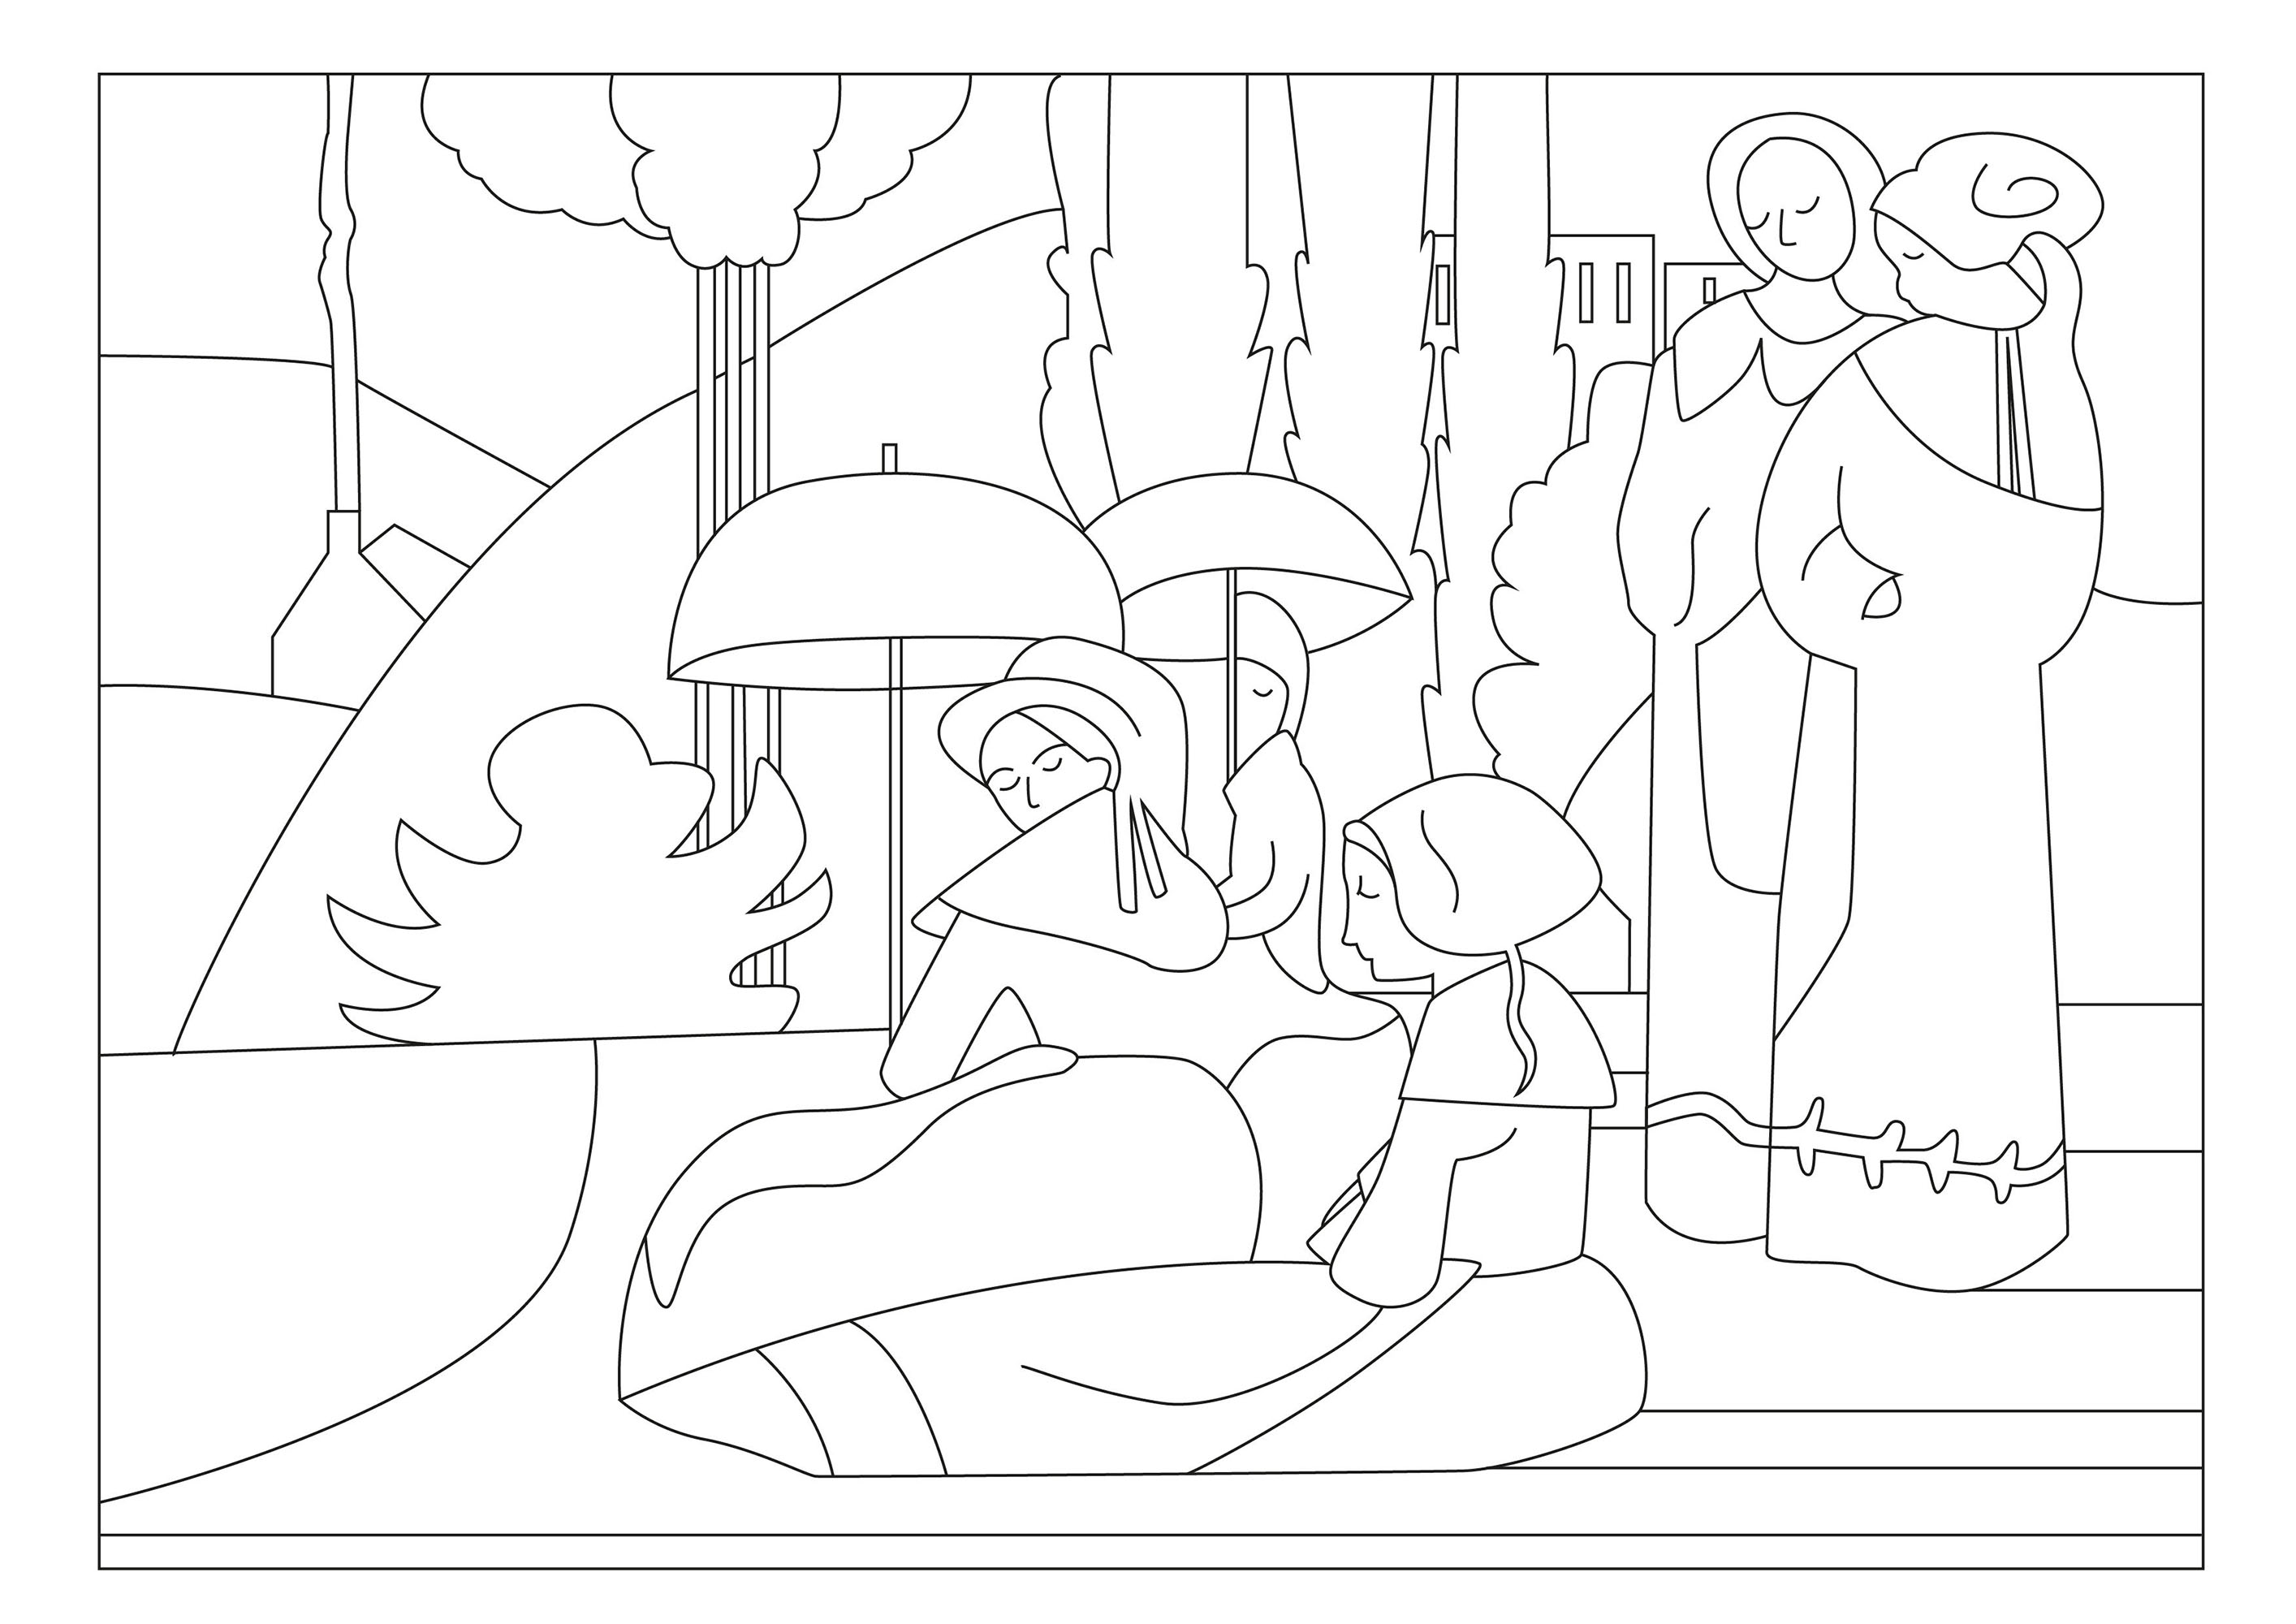 Coloriage créé à partir du tableau Les Bretonnes aux ombrelles (1892) par Emile Bernard. Ce tableau représente un groupe de femmes bretonnes, vêtues de leurs costumes traditionnels et se promenant sous un soleil éclatant, chacune tenant une ombrelle pour se protéger des rayons ardents, Artiste : Gaelle Picard